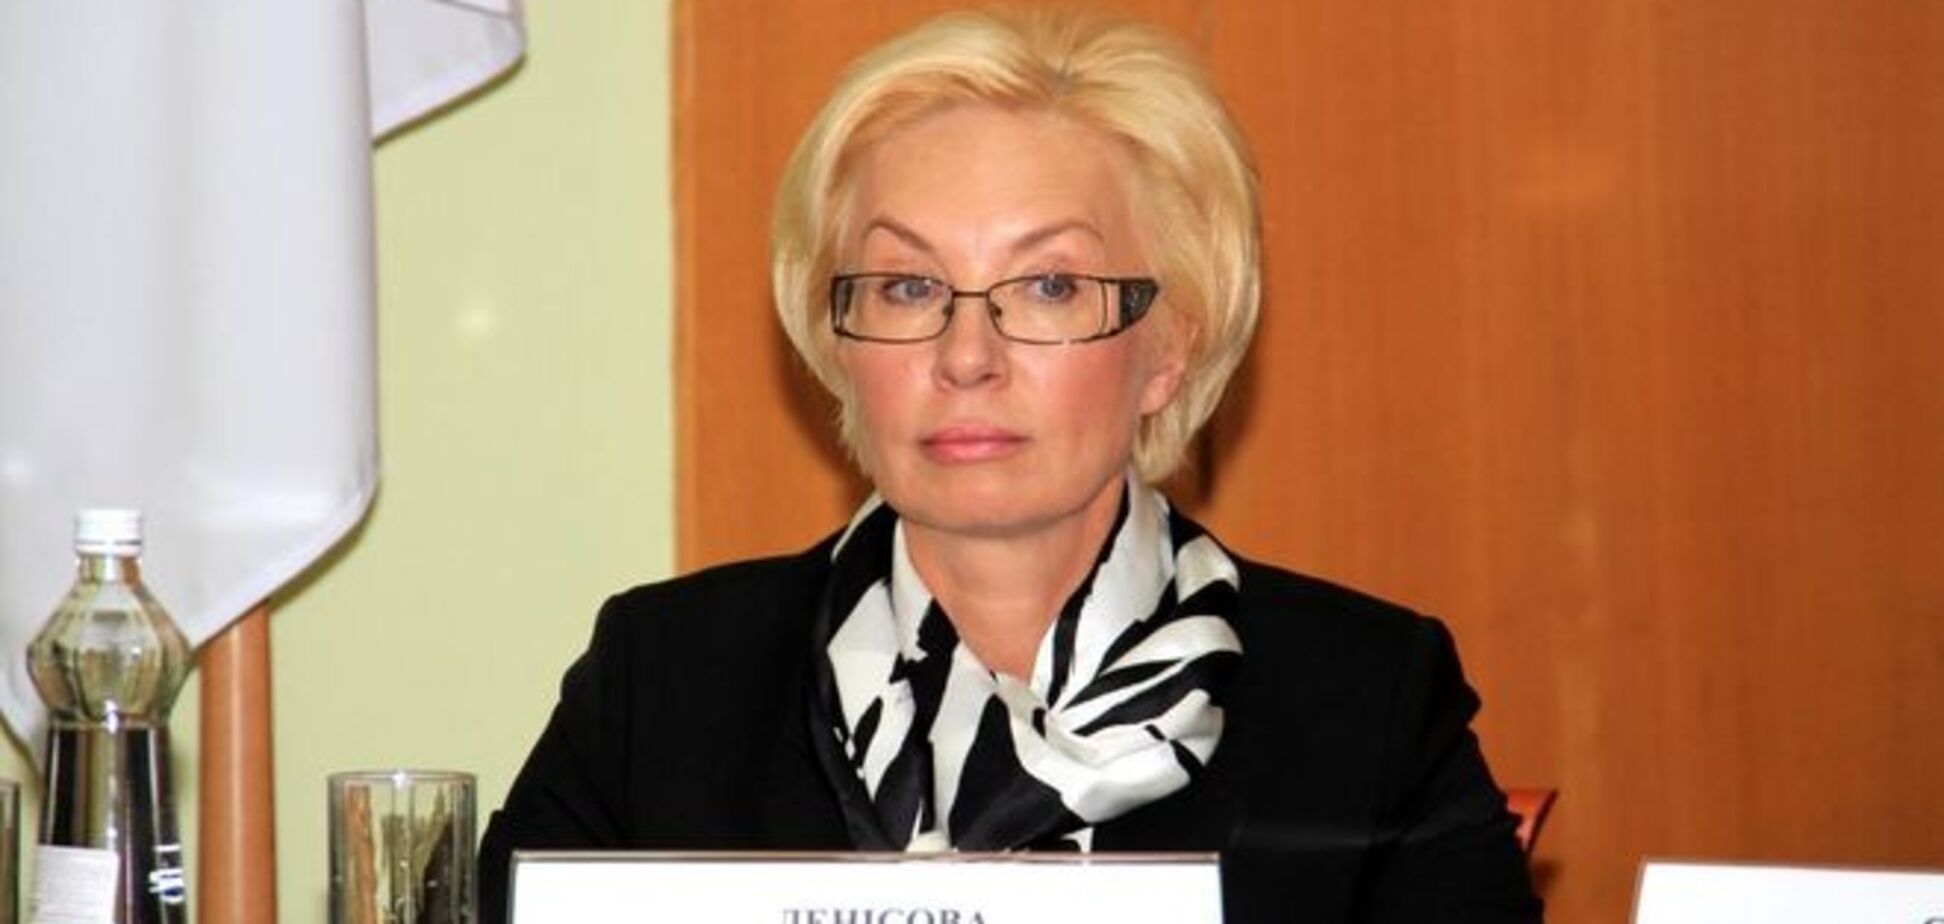 Генпрокурору на заметку: 4 важных факта, которые нужно знать о Людмиле Денисовой